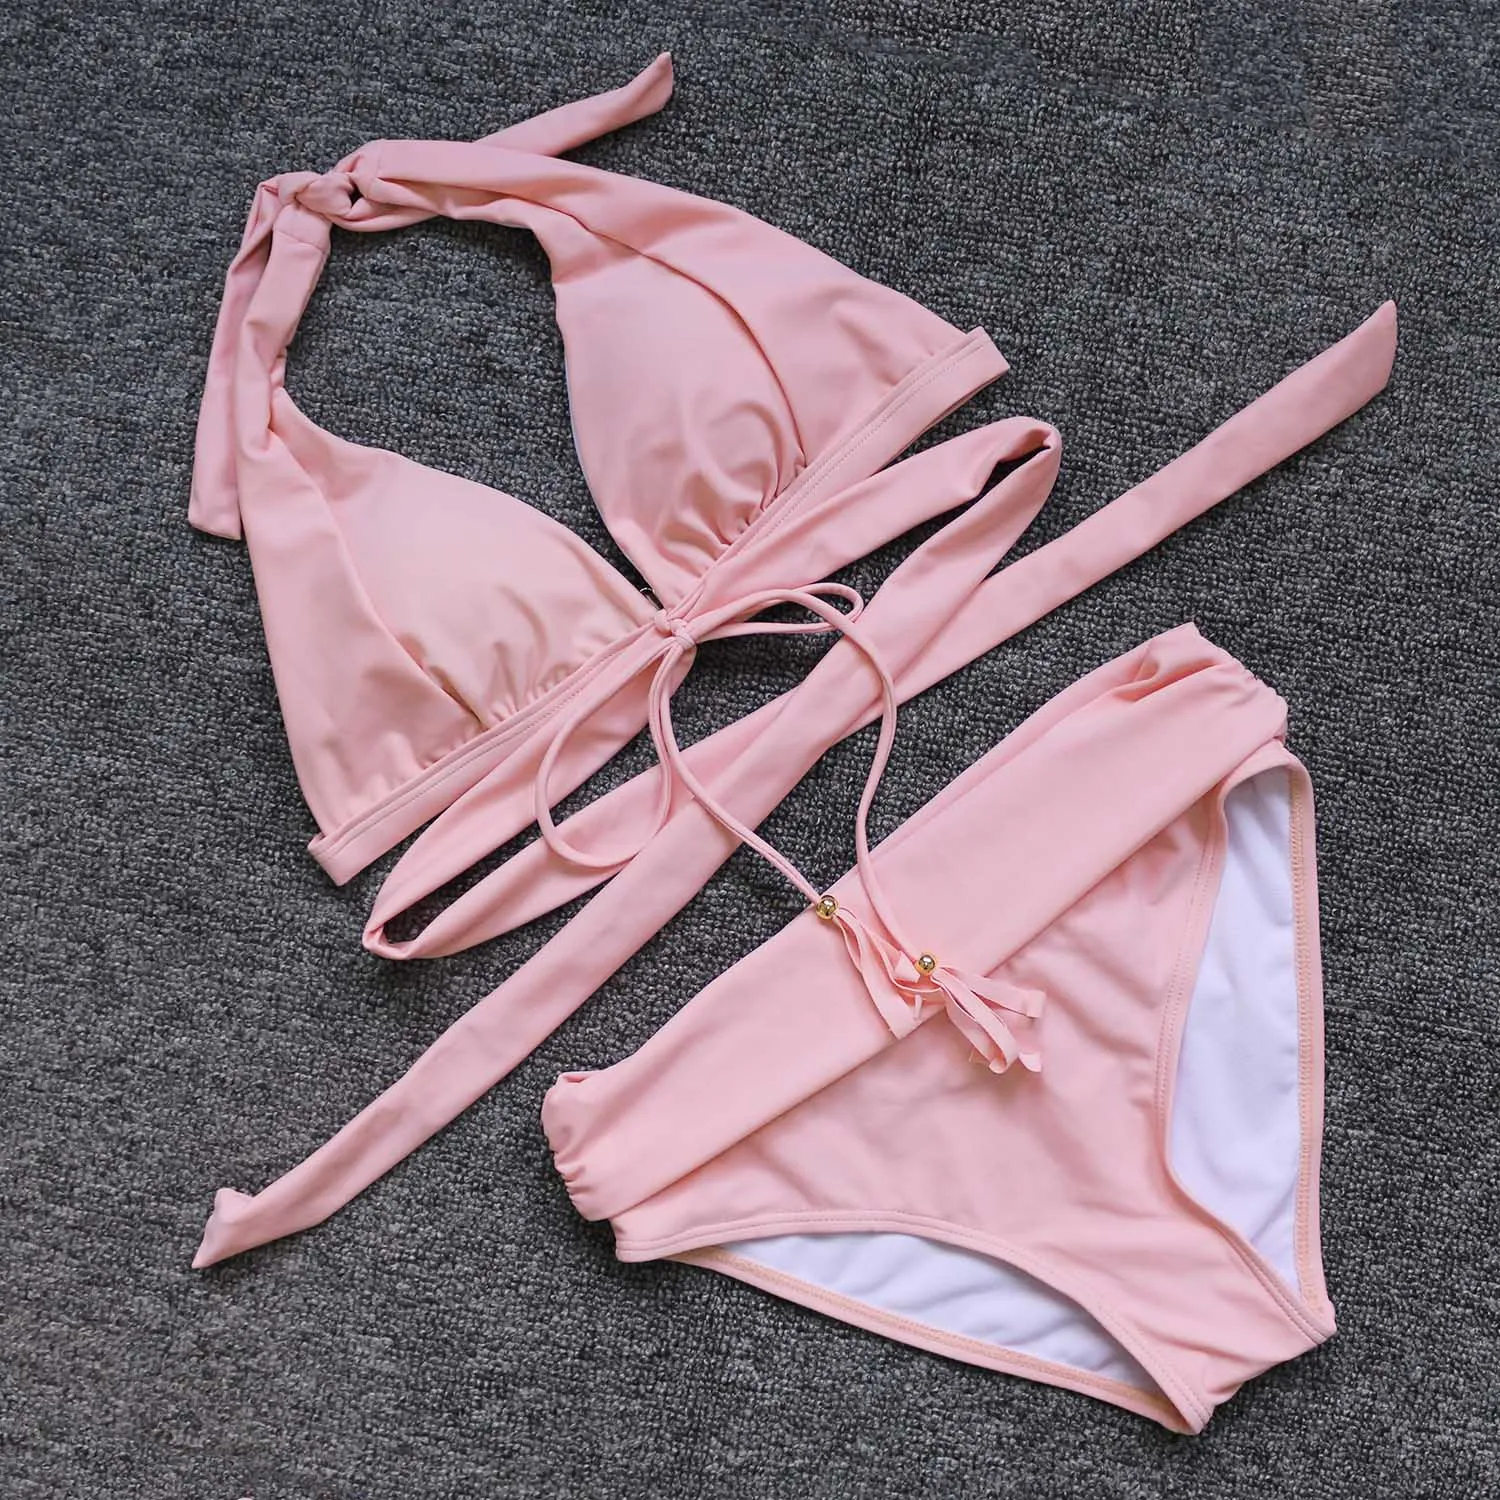 Сексуальный розовый купальник с высокой талией, пуш-ап, бикини, верх, низ, смешанный размер, бандаж, купальник для женщин, с кисточками, одежда для плавания, пляжная одежда, купальный костюм